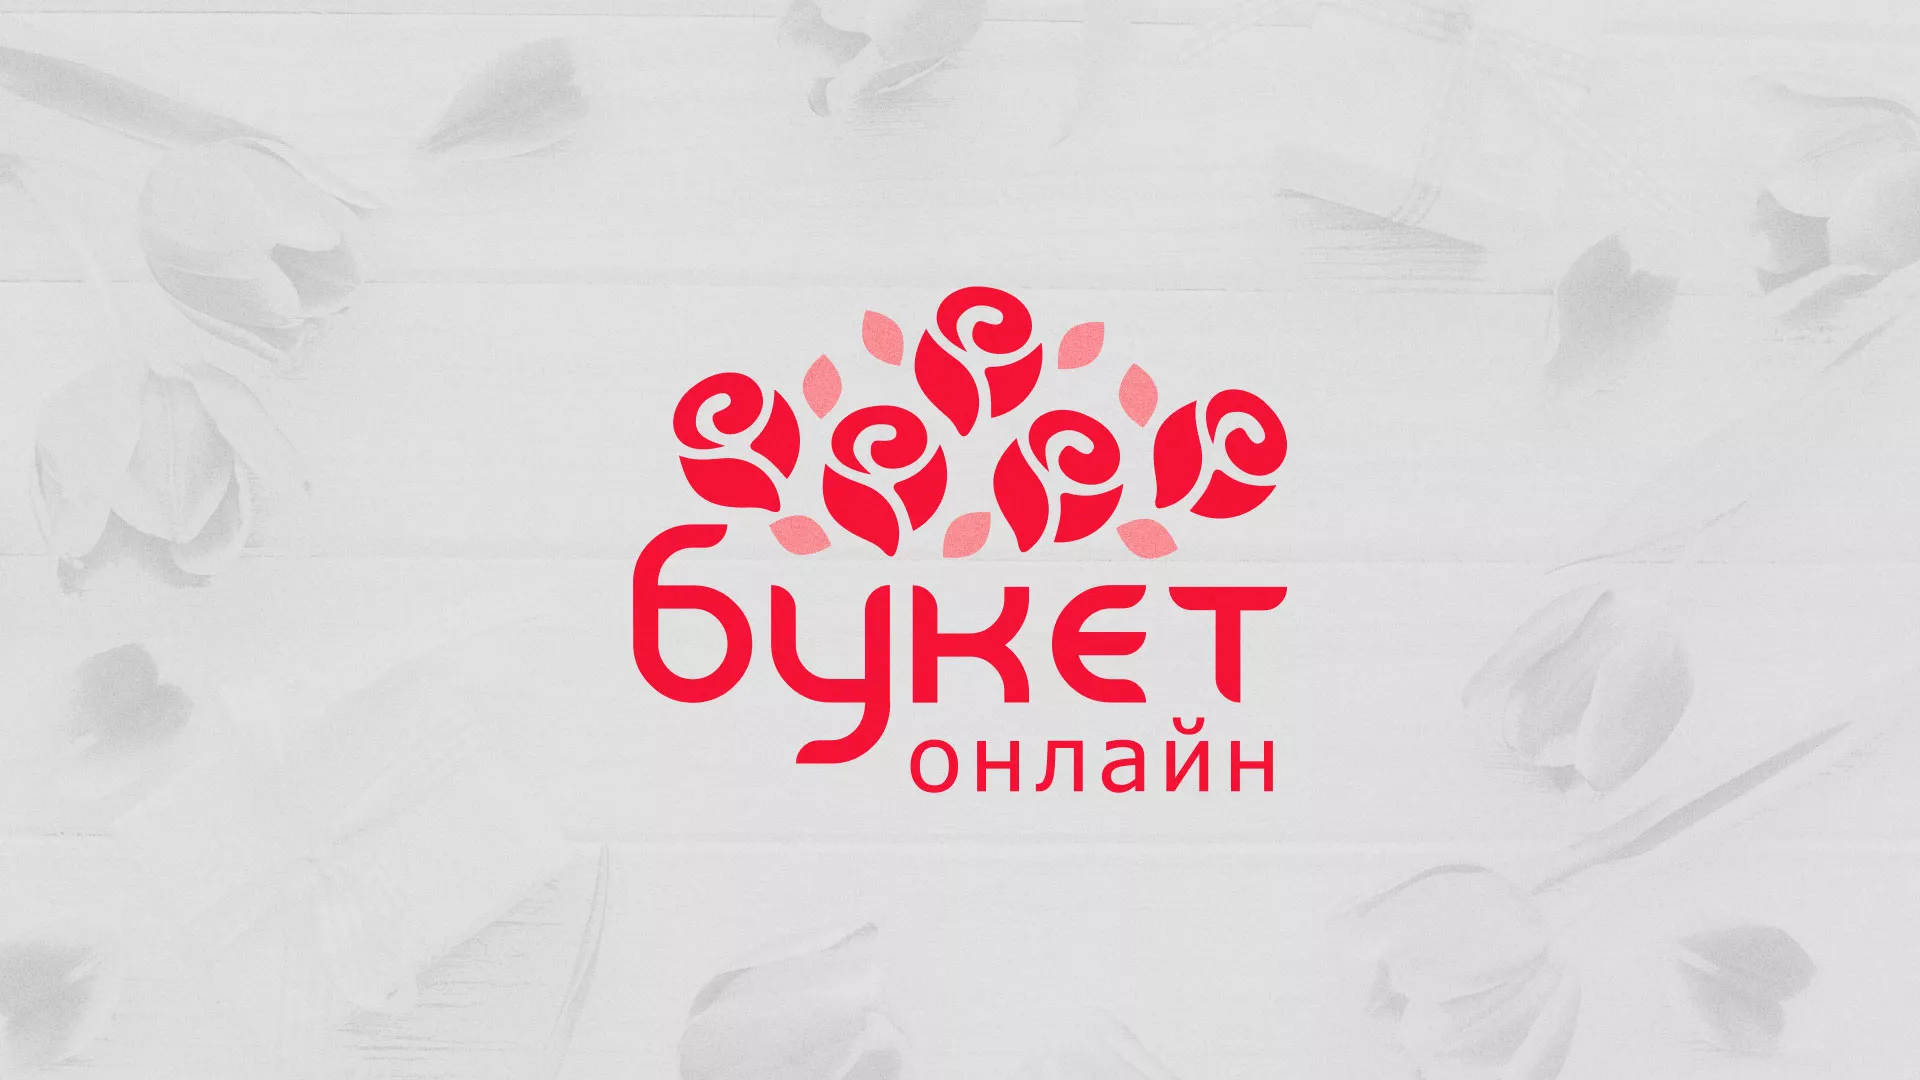 Создание интернет-магазина «Букет-онлайн» по цветам в Юрюзани